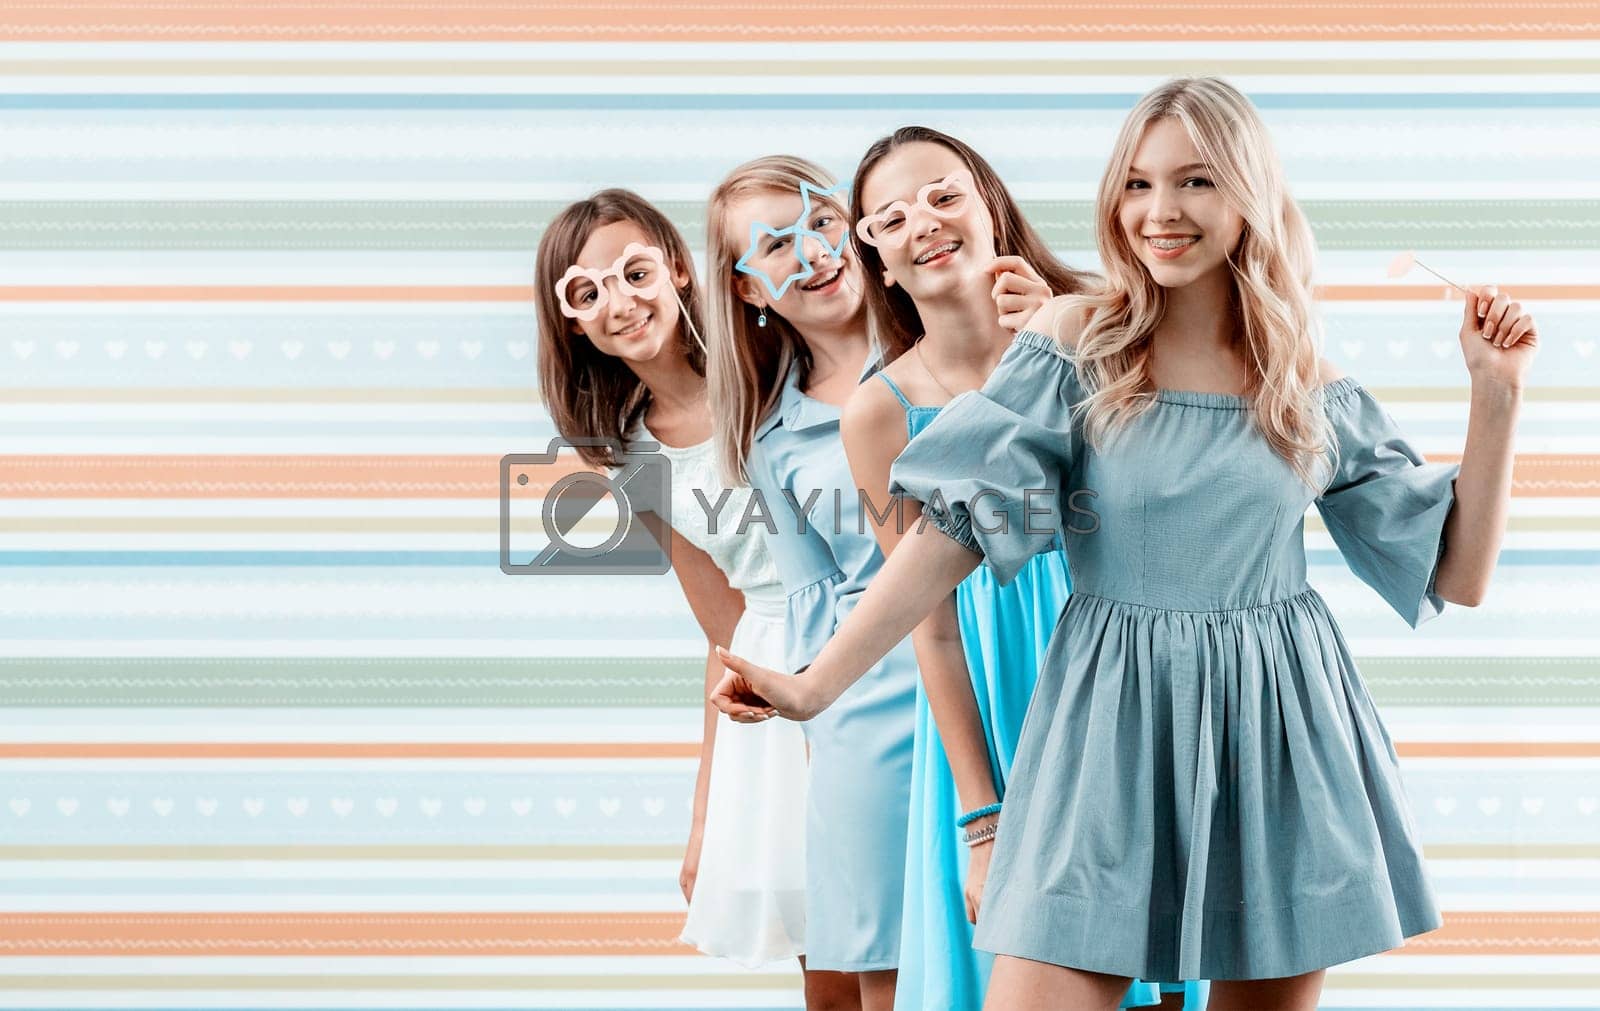 Royalty free image of Smiling teenage girls by GekaSkr